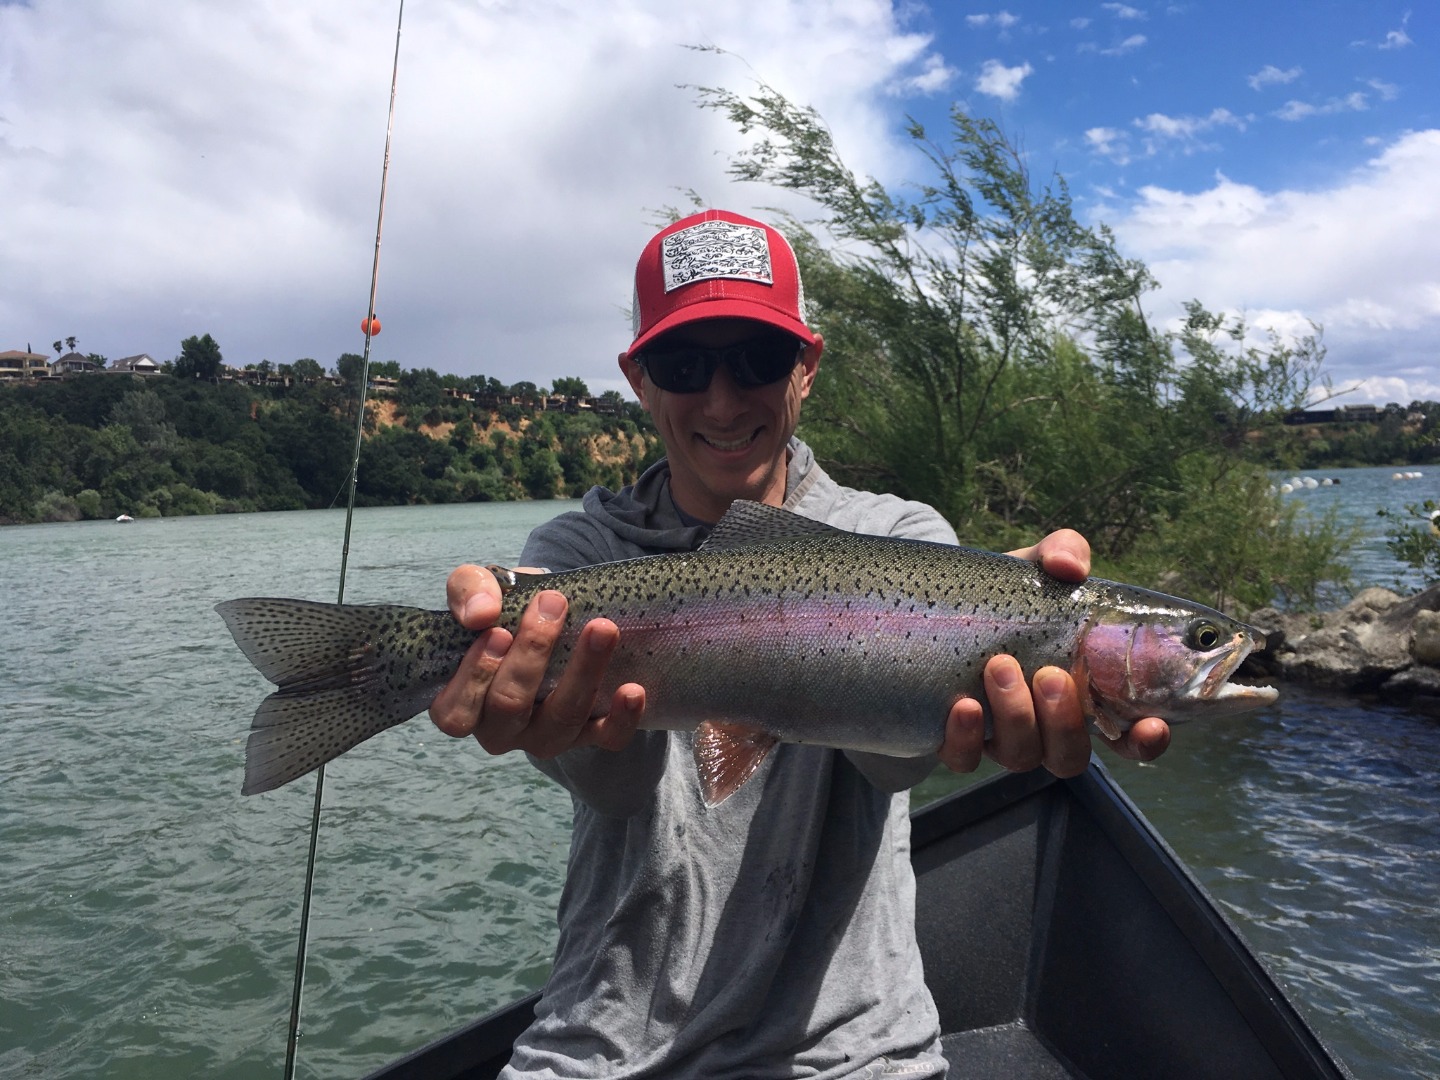 Wild rainbow fishing